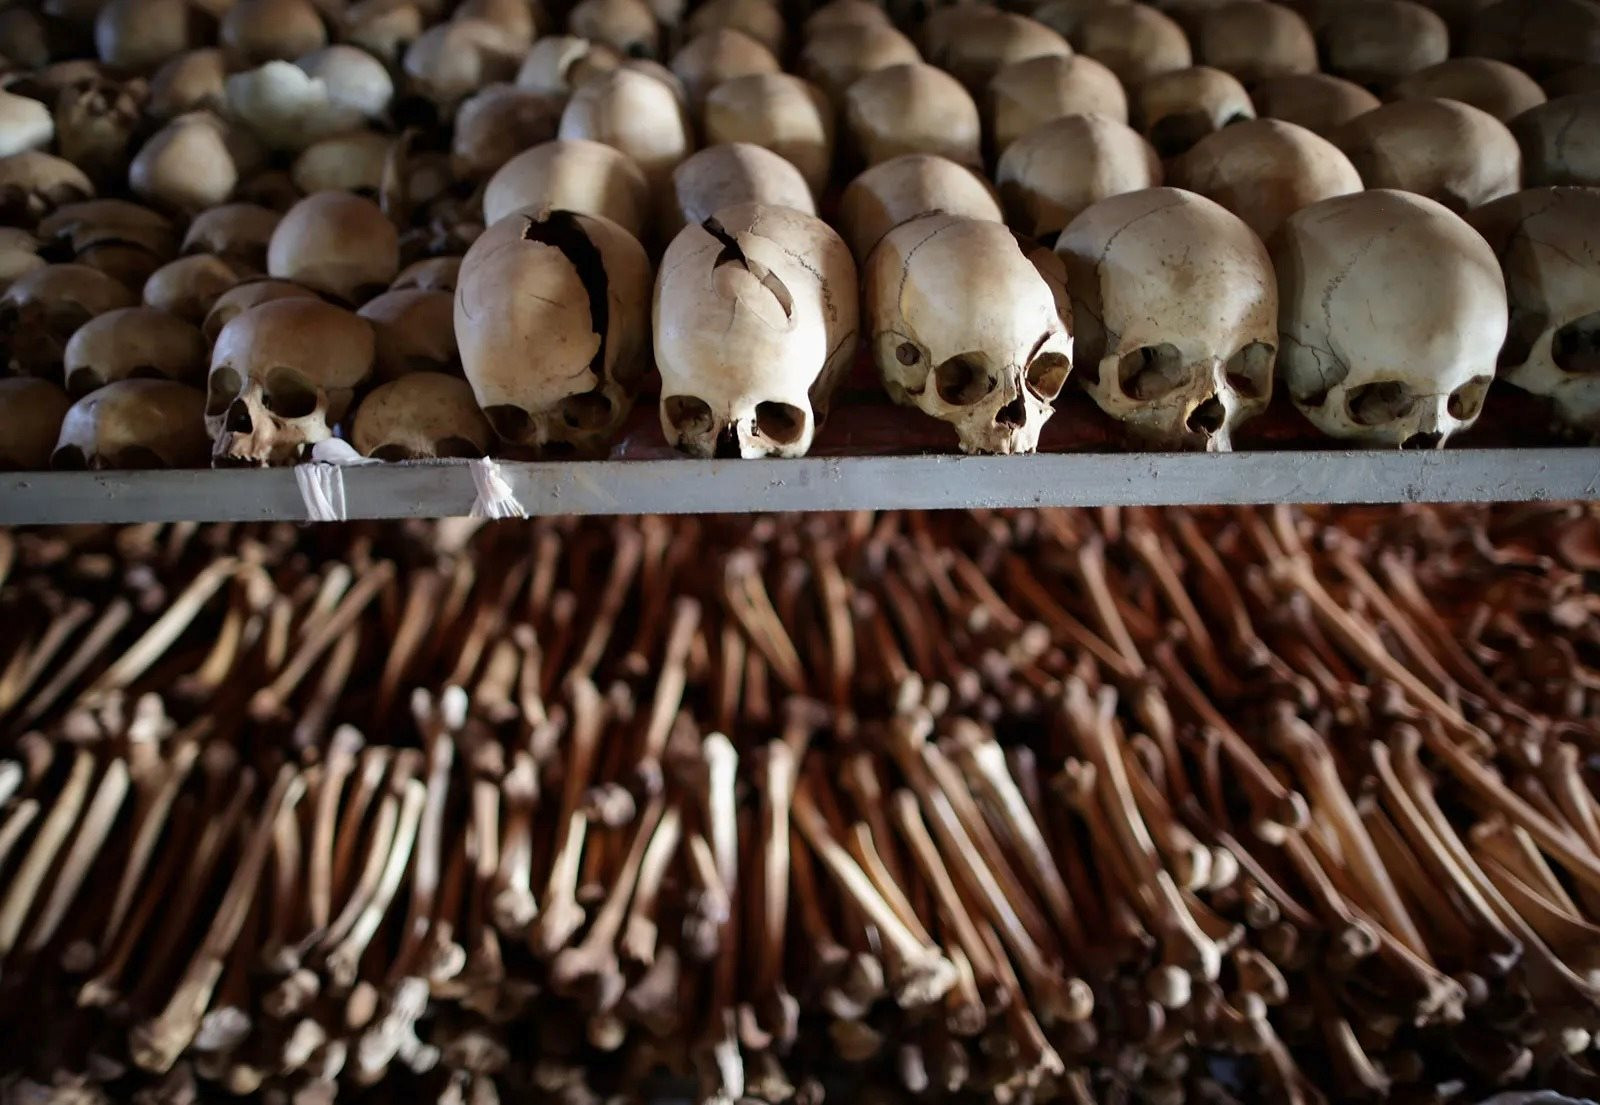 skeletal-remains-ntarama-church-genocide-memorial_11zon.jpg